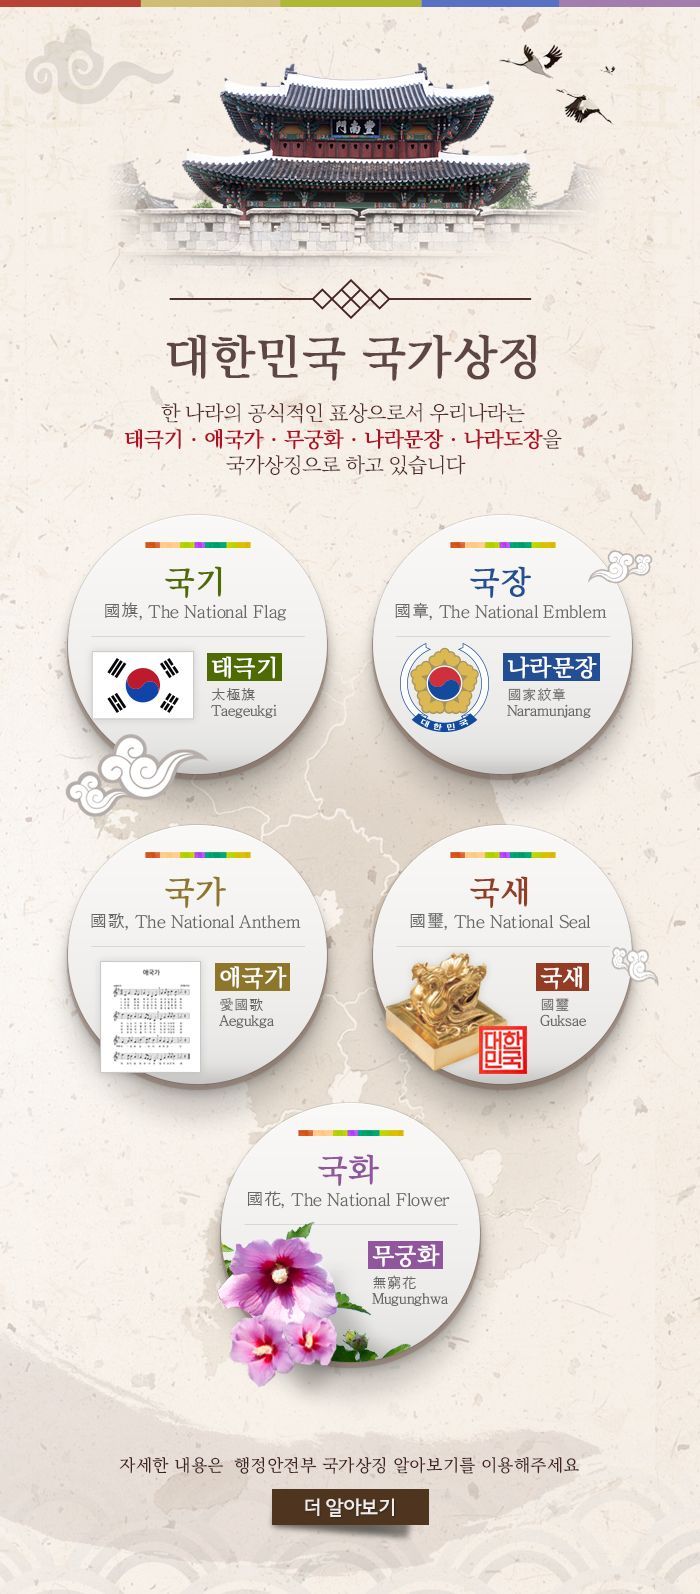 "1원=100환, 소나무·까치가 국가상징"…잘못된 韓 정보 바로잡았다